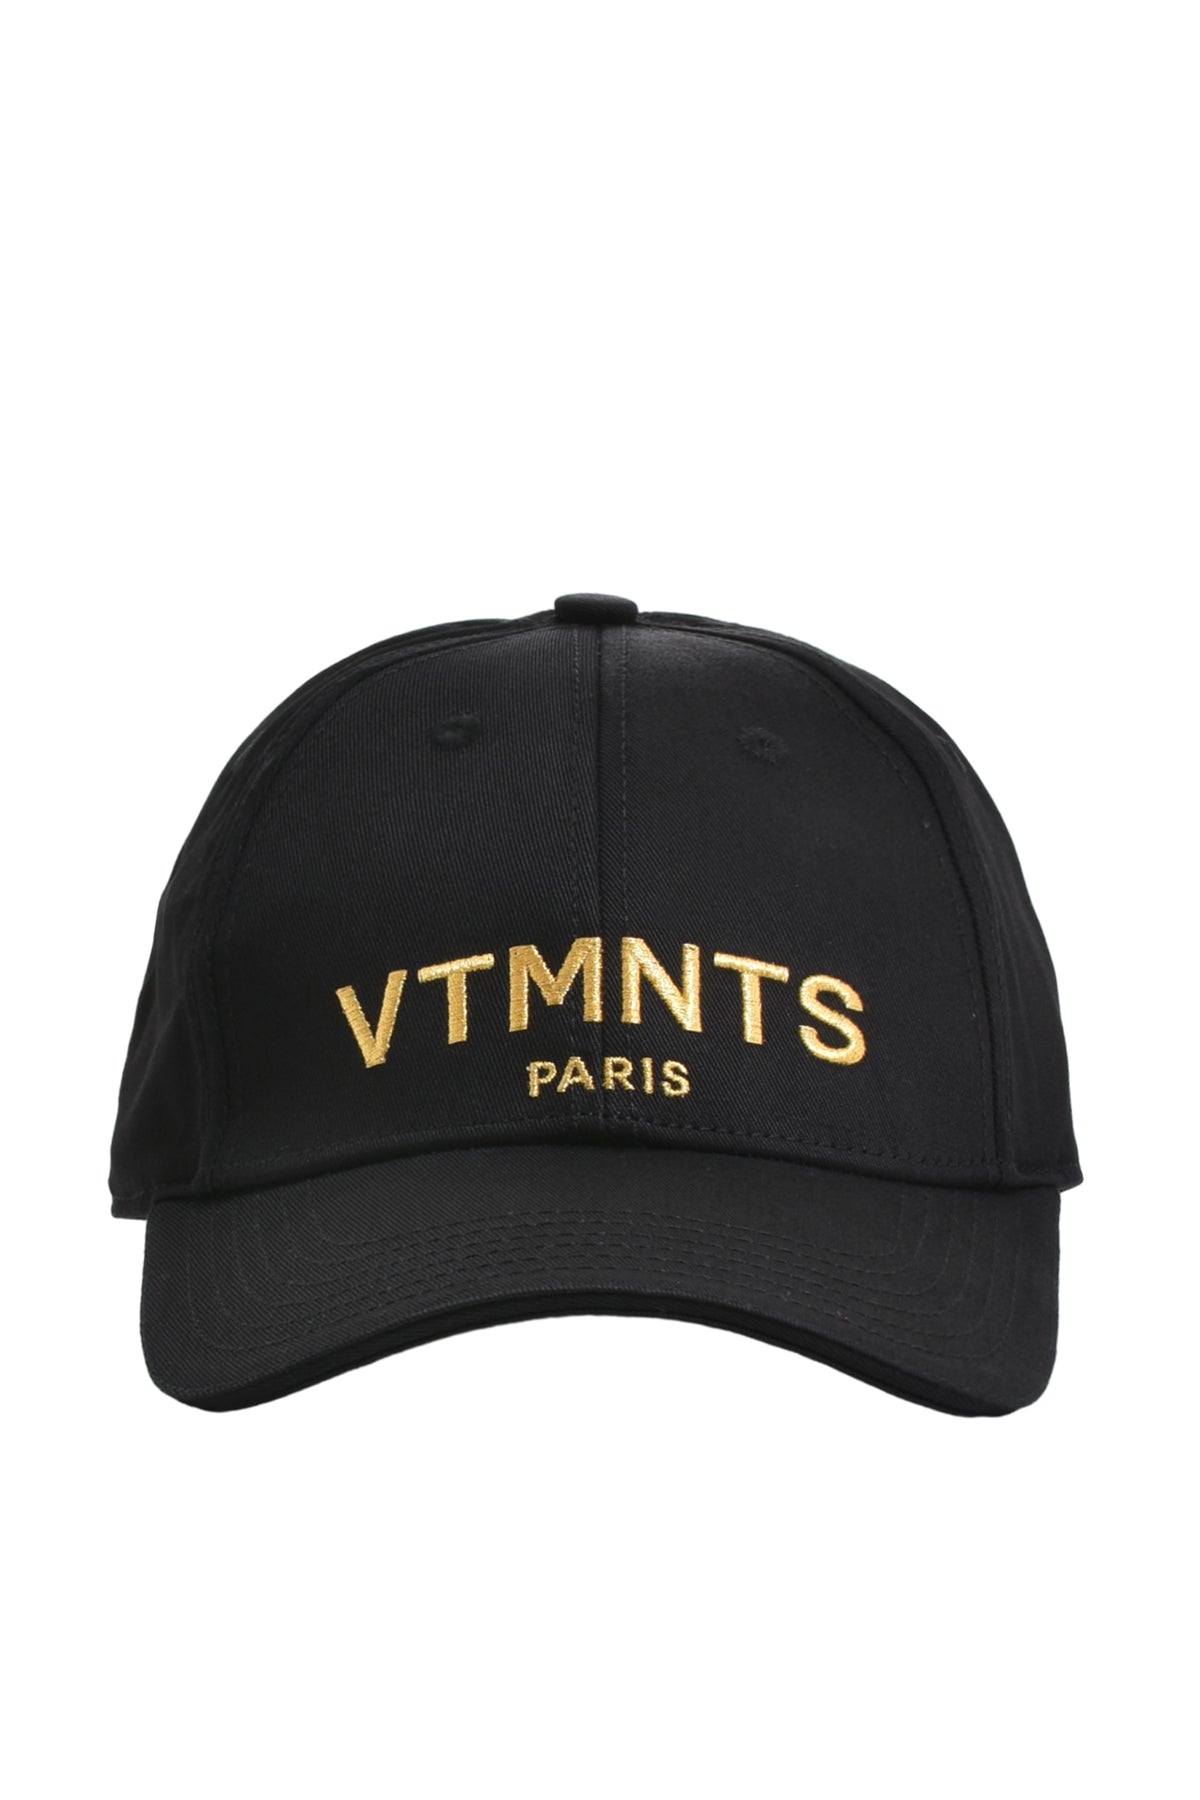 VTMNTS VTMNTS PARIS LOGO CAP / BLK GOLD